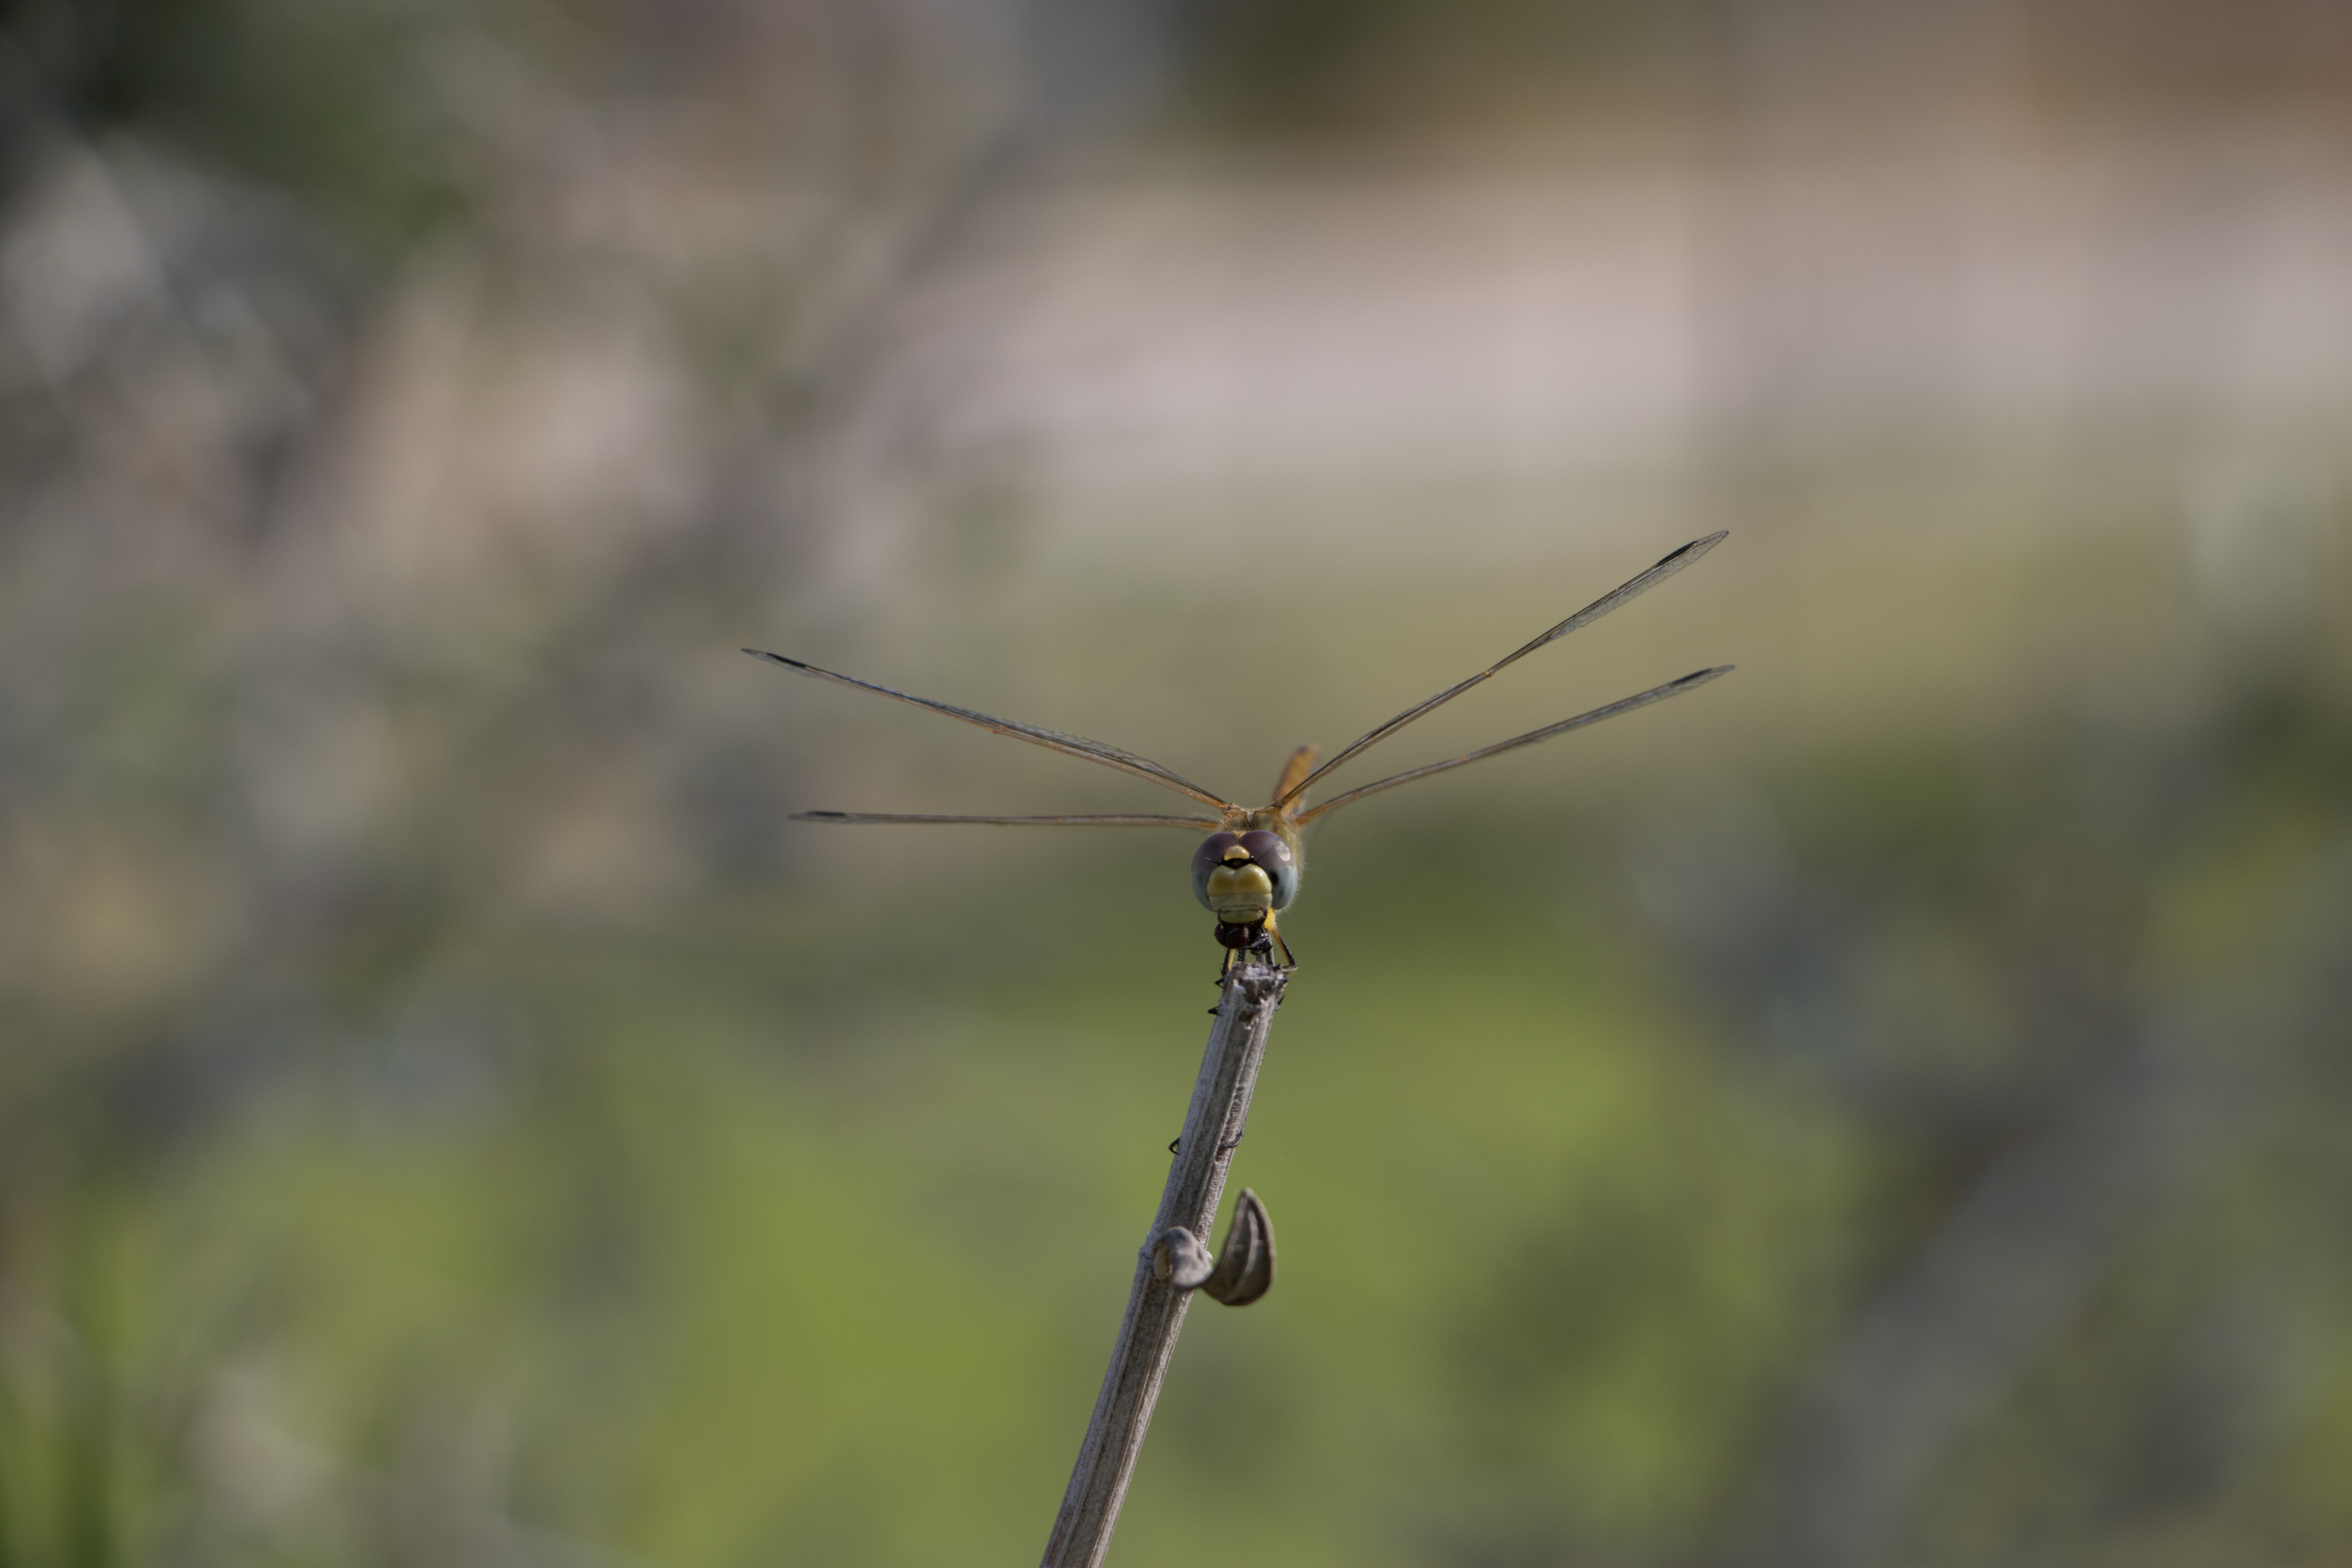 Una libélula típica de ver por Sevilla, seguro que cerca debe haber una masa de agua, en esta ocasión podemos ver un macho inmaduro de Sympetrum fonscolombii que conforme madure virará a un color rojizo.